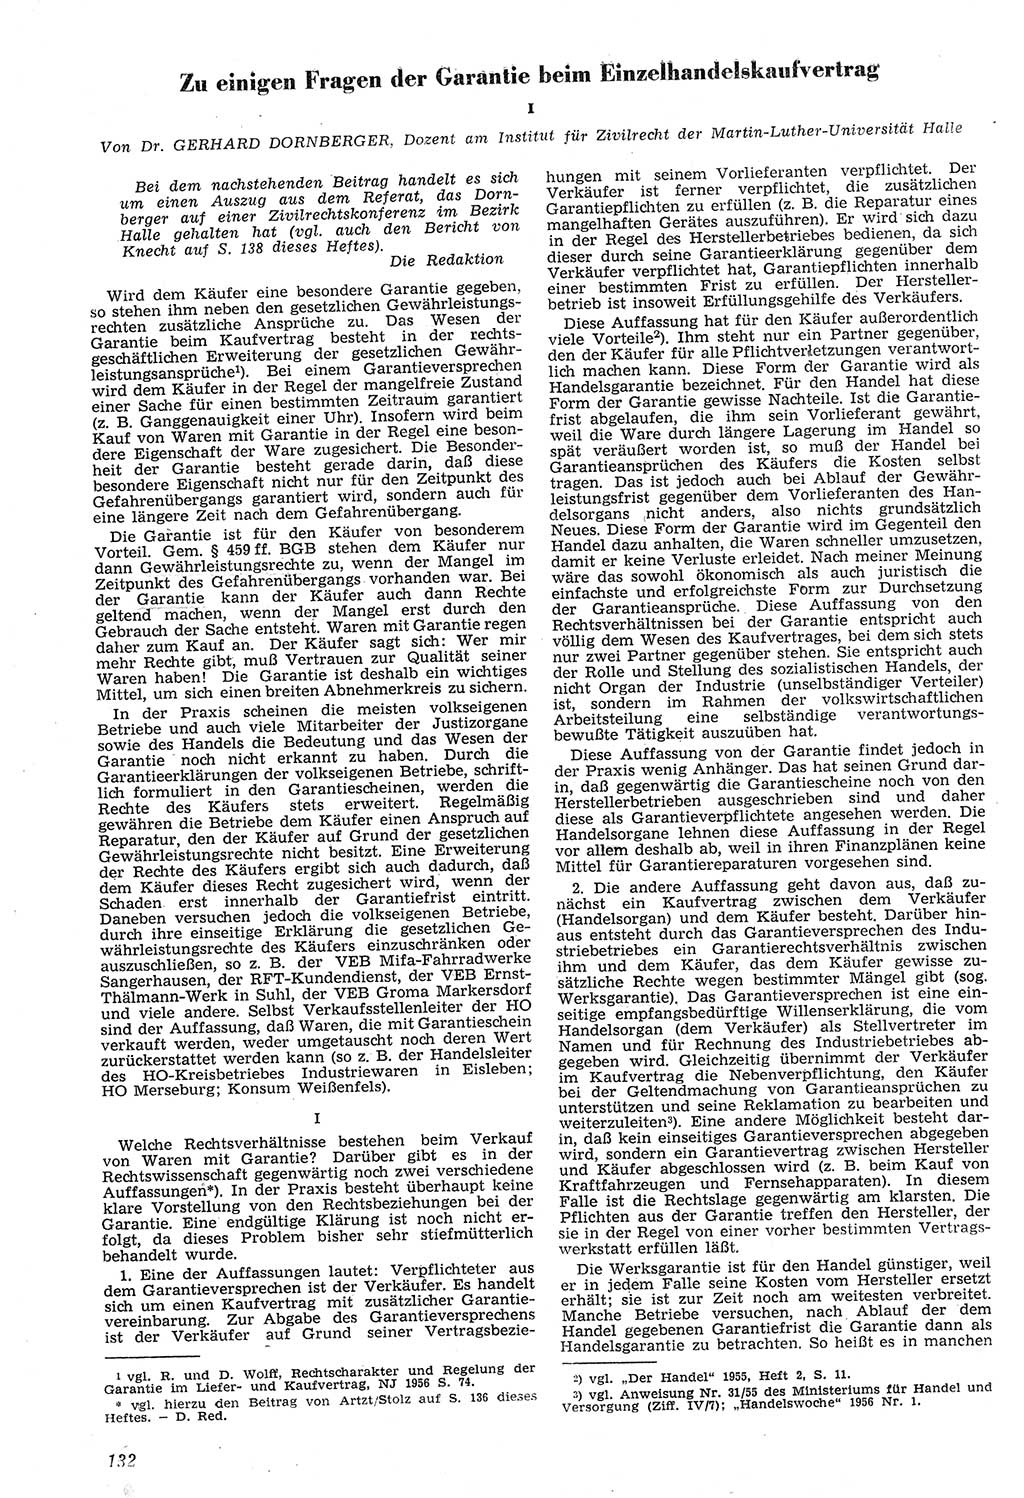 Neue Justiz (NJ), Zeitschrift für Recht und Rechtswissenschaft [Deutsche Demokratische Republik (DDR)], 11. Jahrgang 1957, Seite 132 (NJ DDR 1957, S. 132)